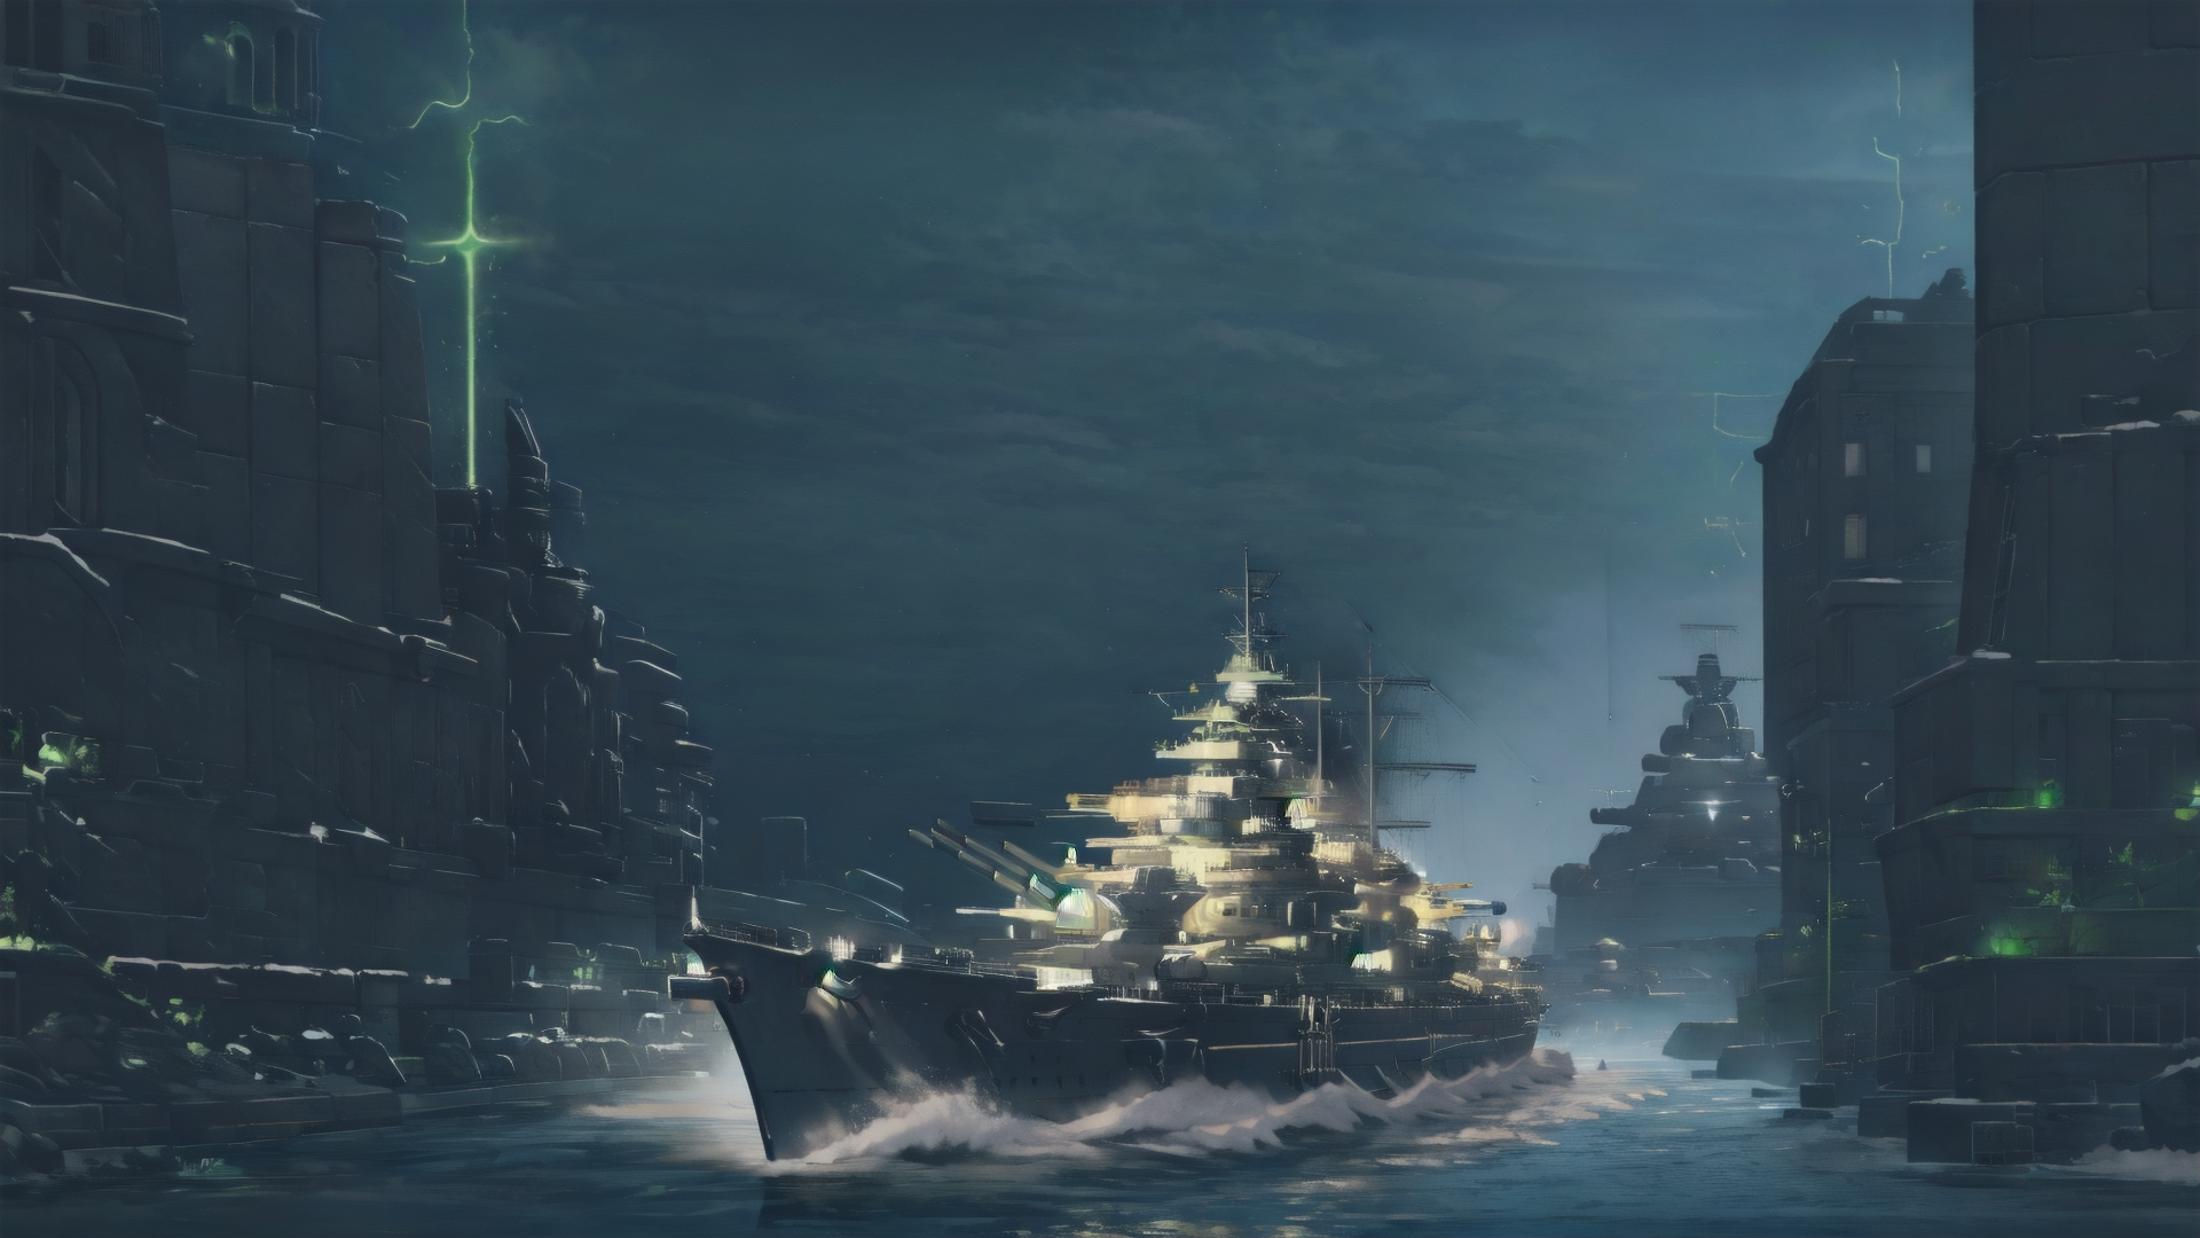 Bismarck Battleship image by HC94